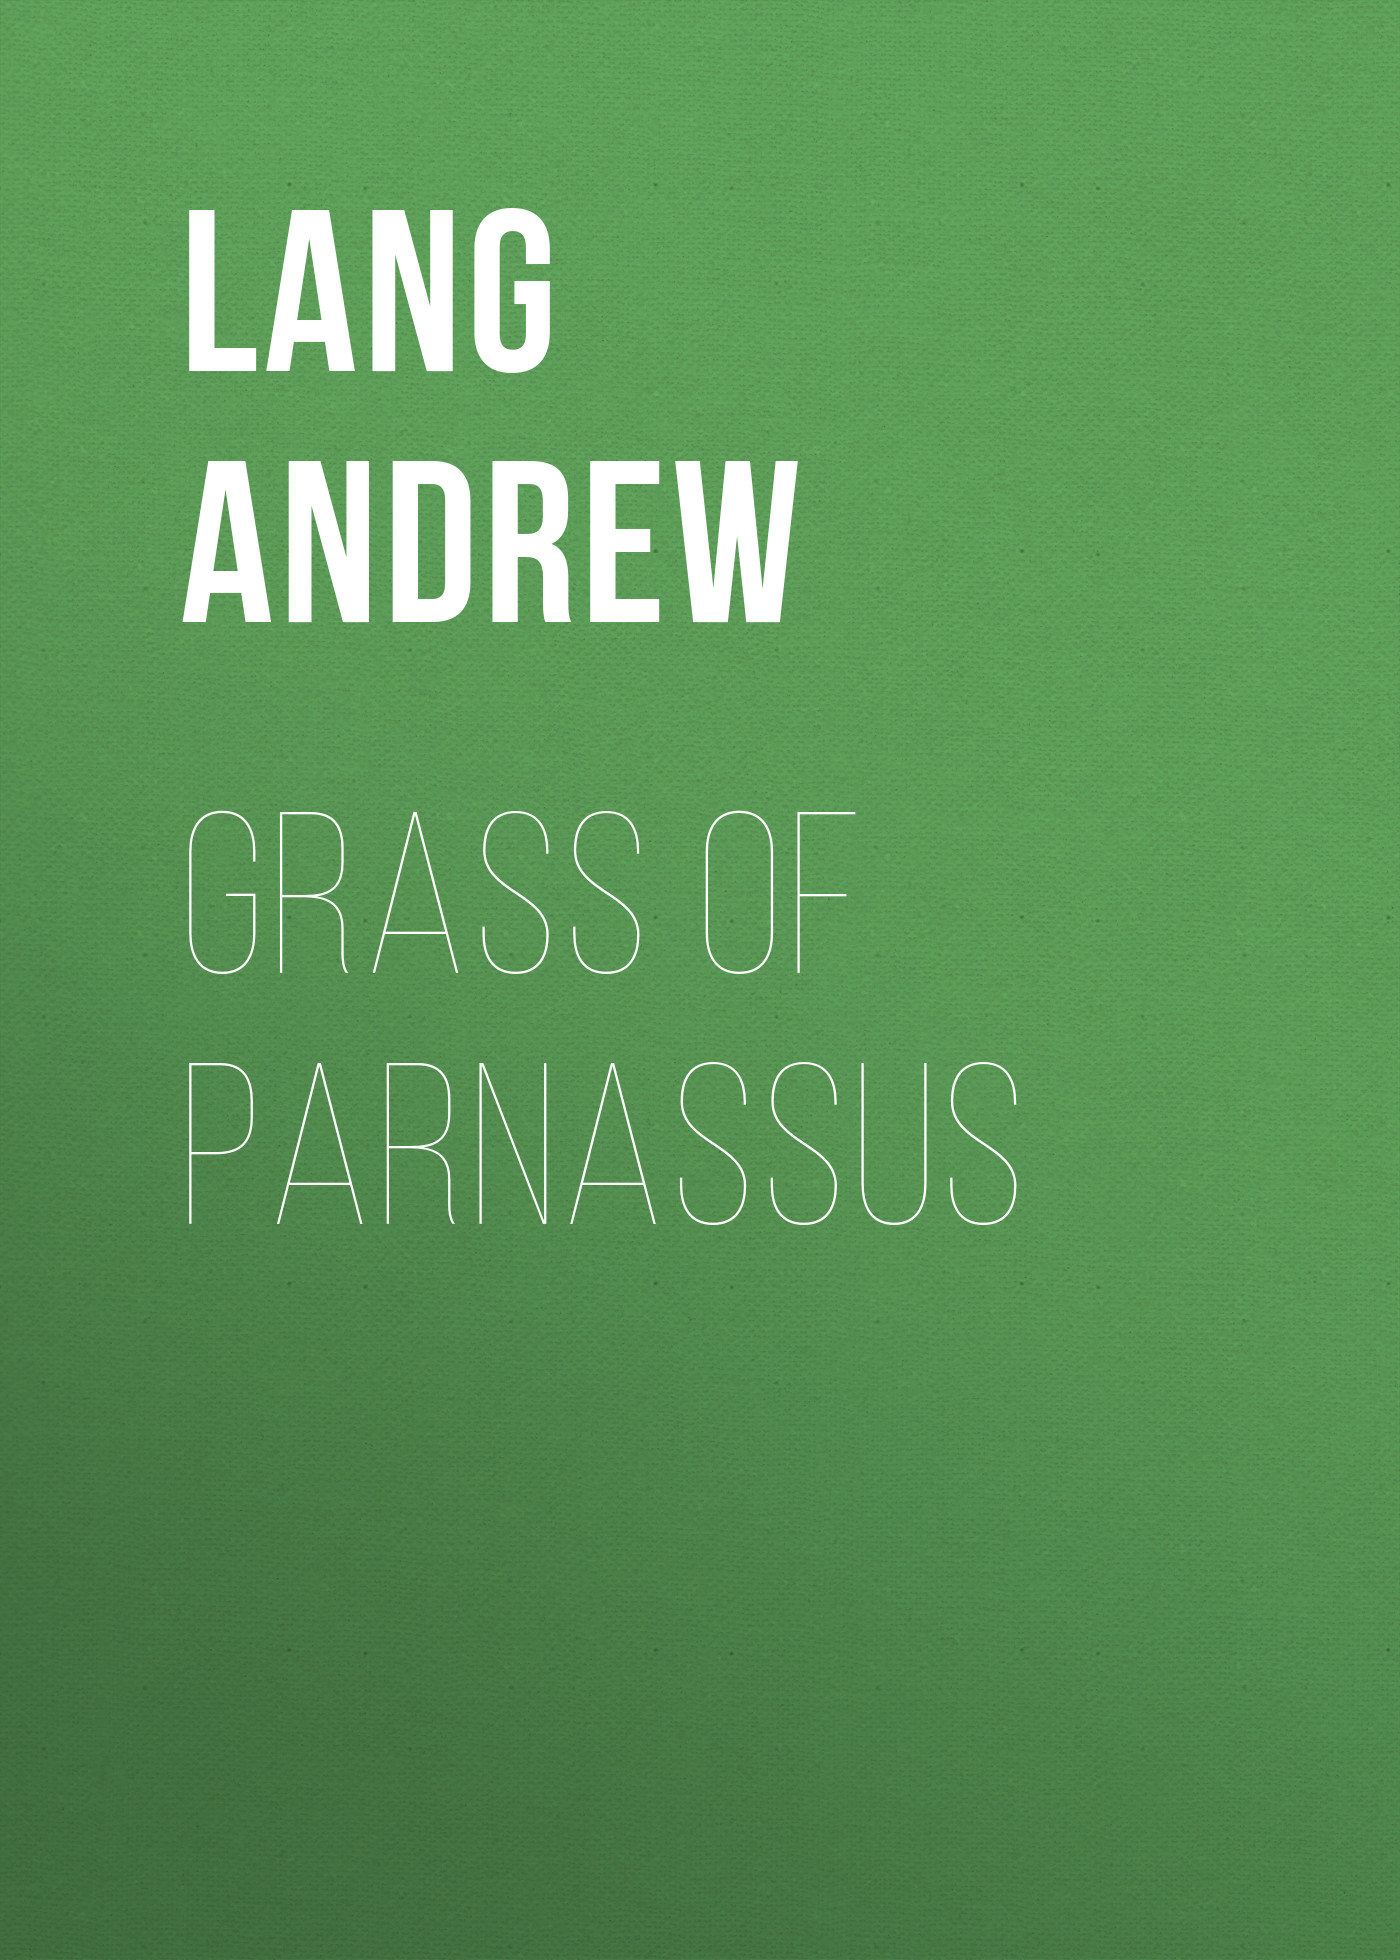 Книга Grass of Parnassus из серии , созданная Andrew Lang, может относится к жанру Зарубежная старинная литература, Зарубежная классика. Стоимость электронной книги Grass of Parnassus с идентификатором 25229436 составляет 0 руб.